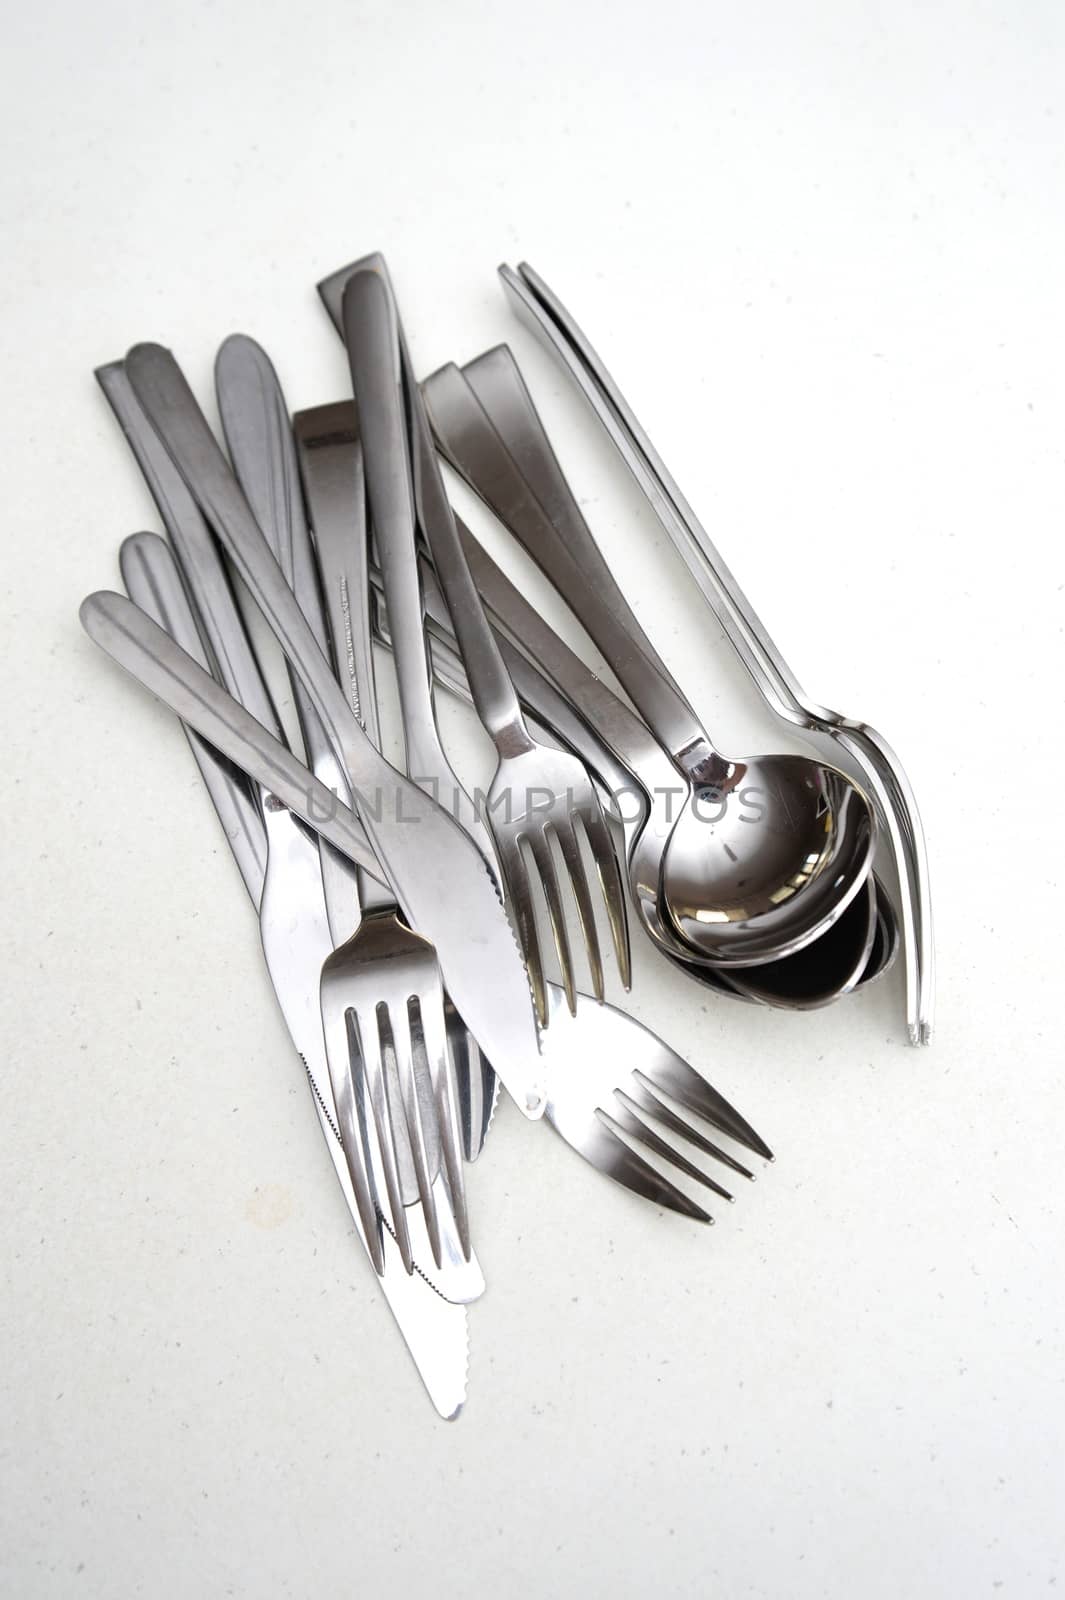 Kitchen utensils on a kitchen bench